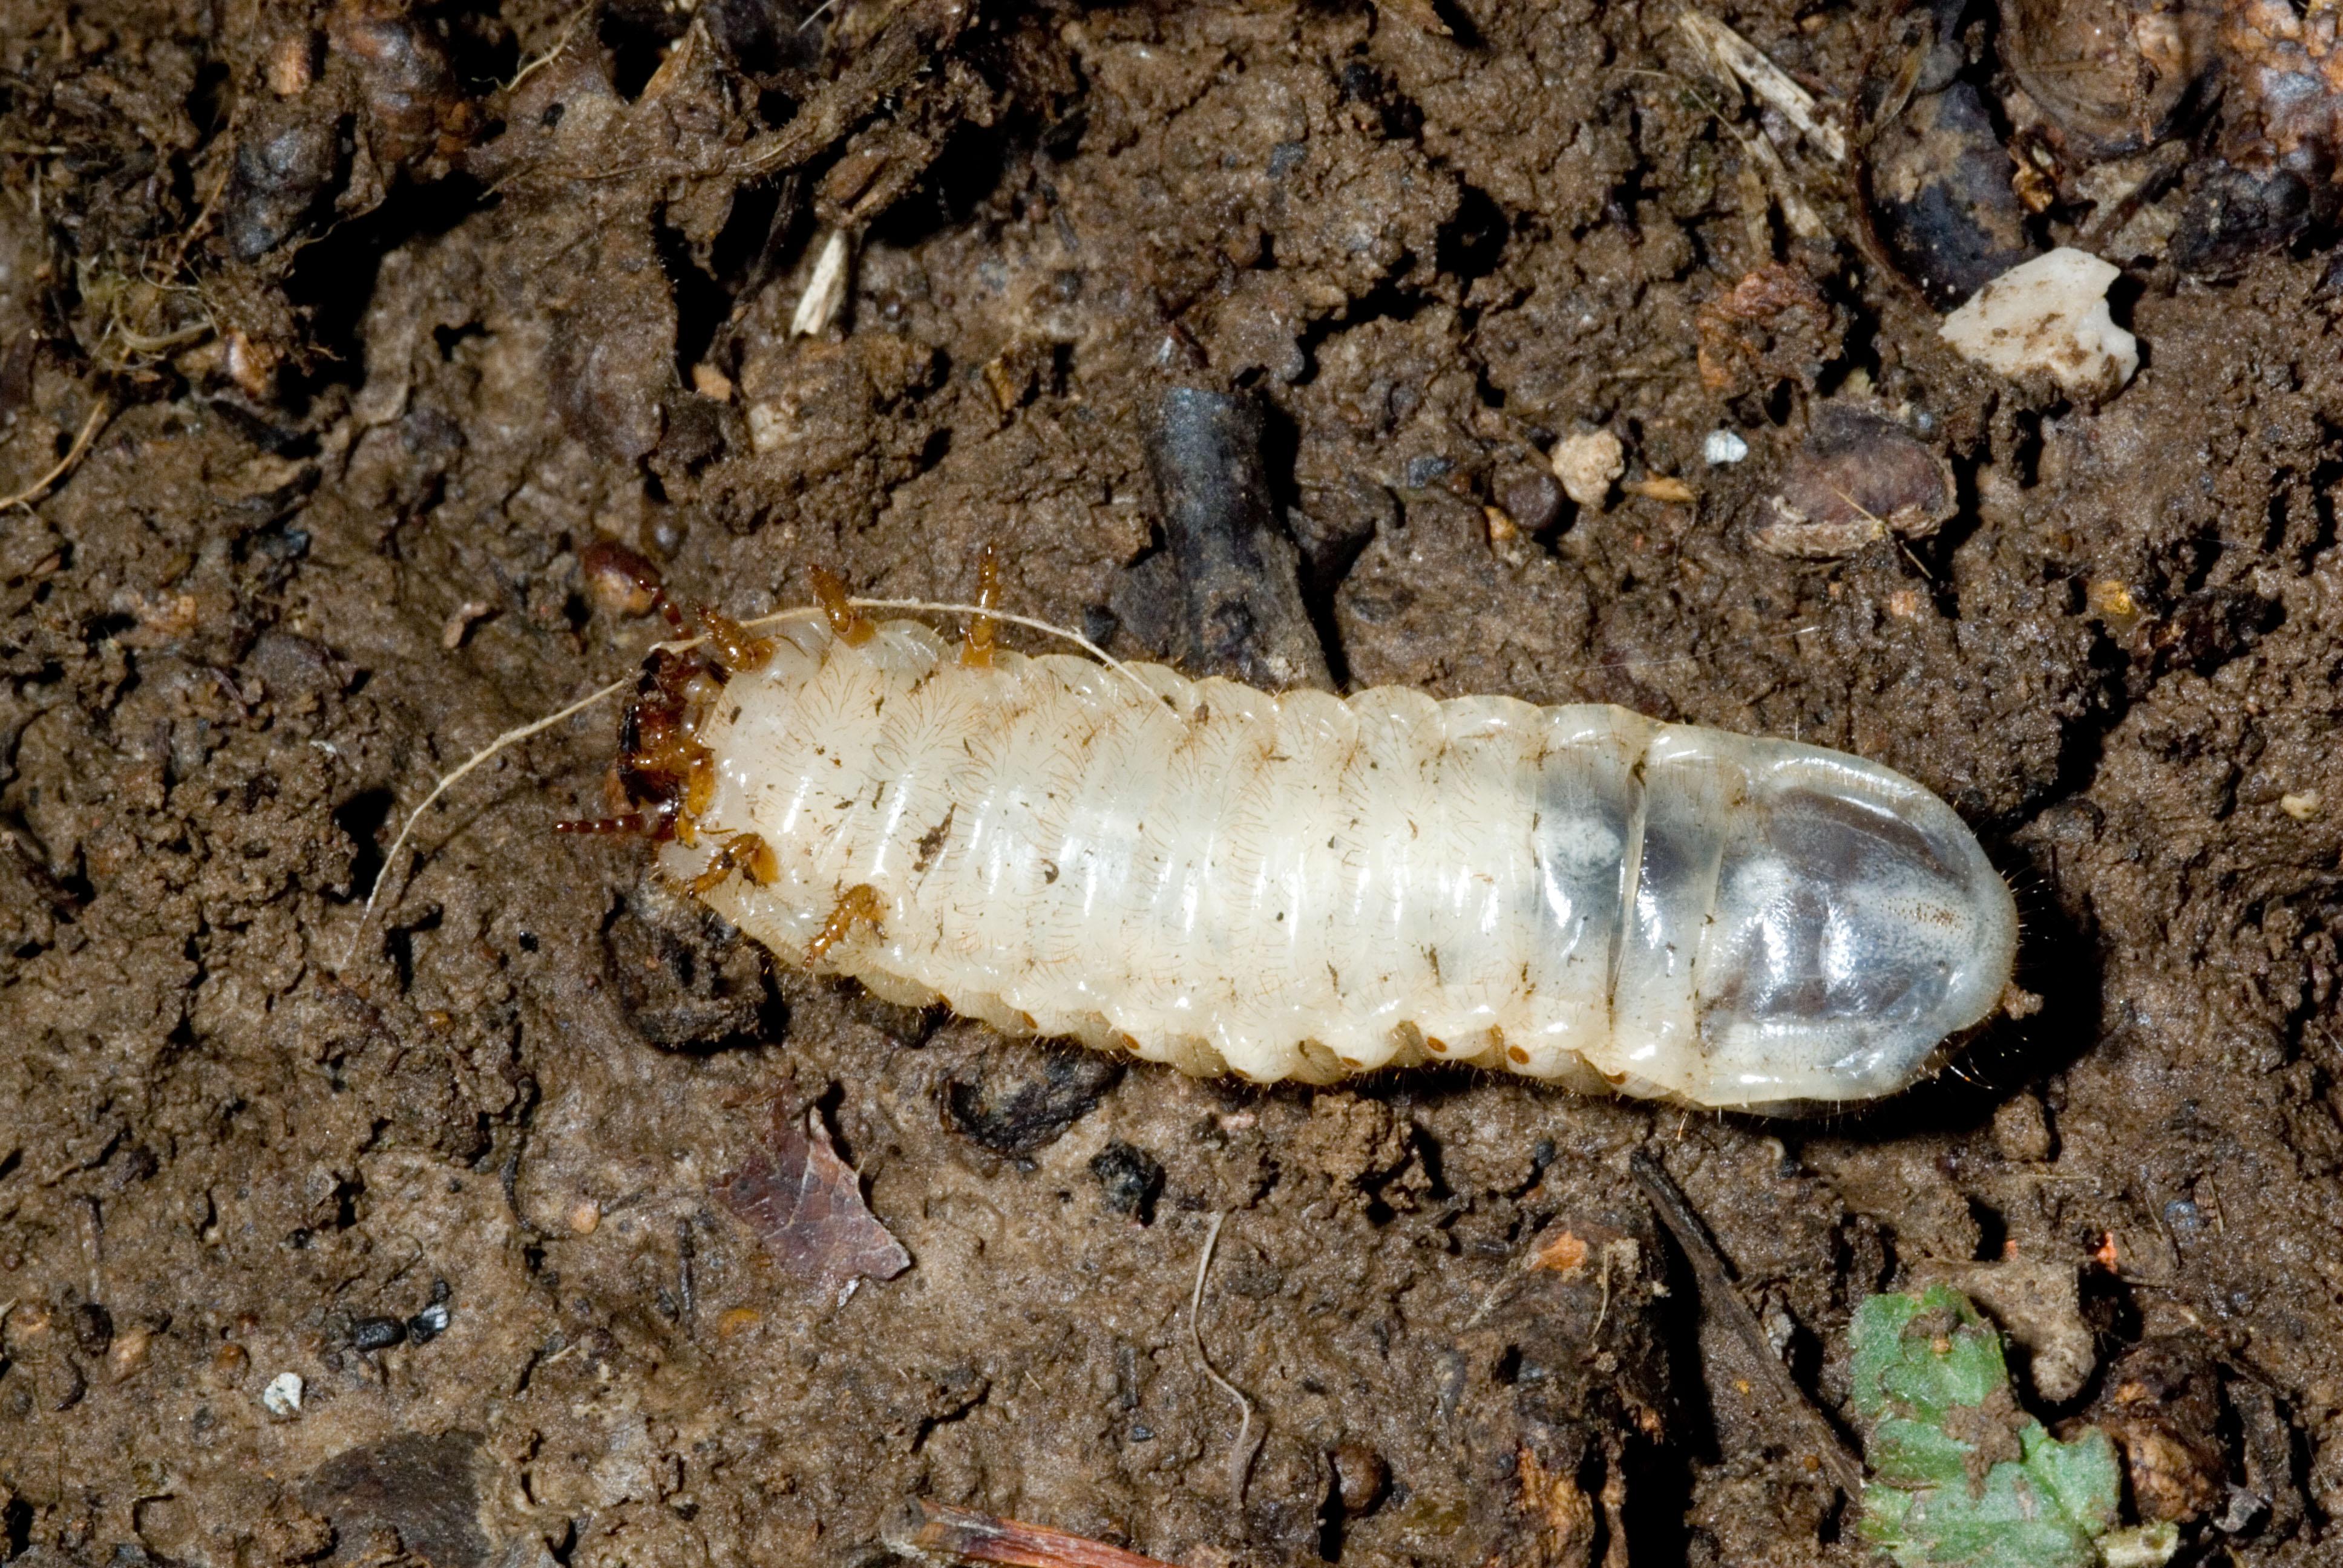 Green June beetle larva. 